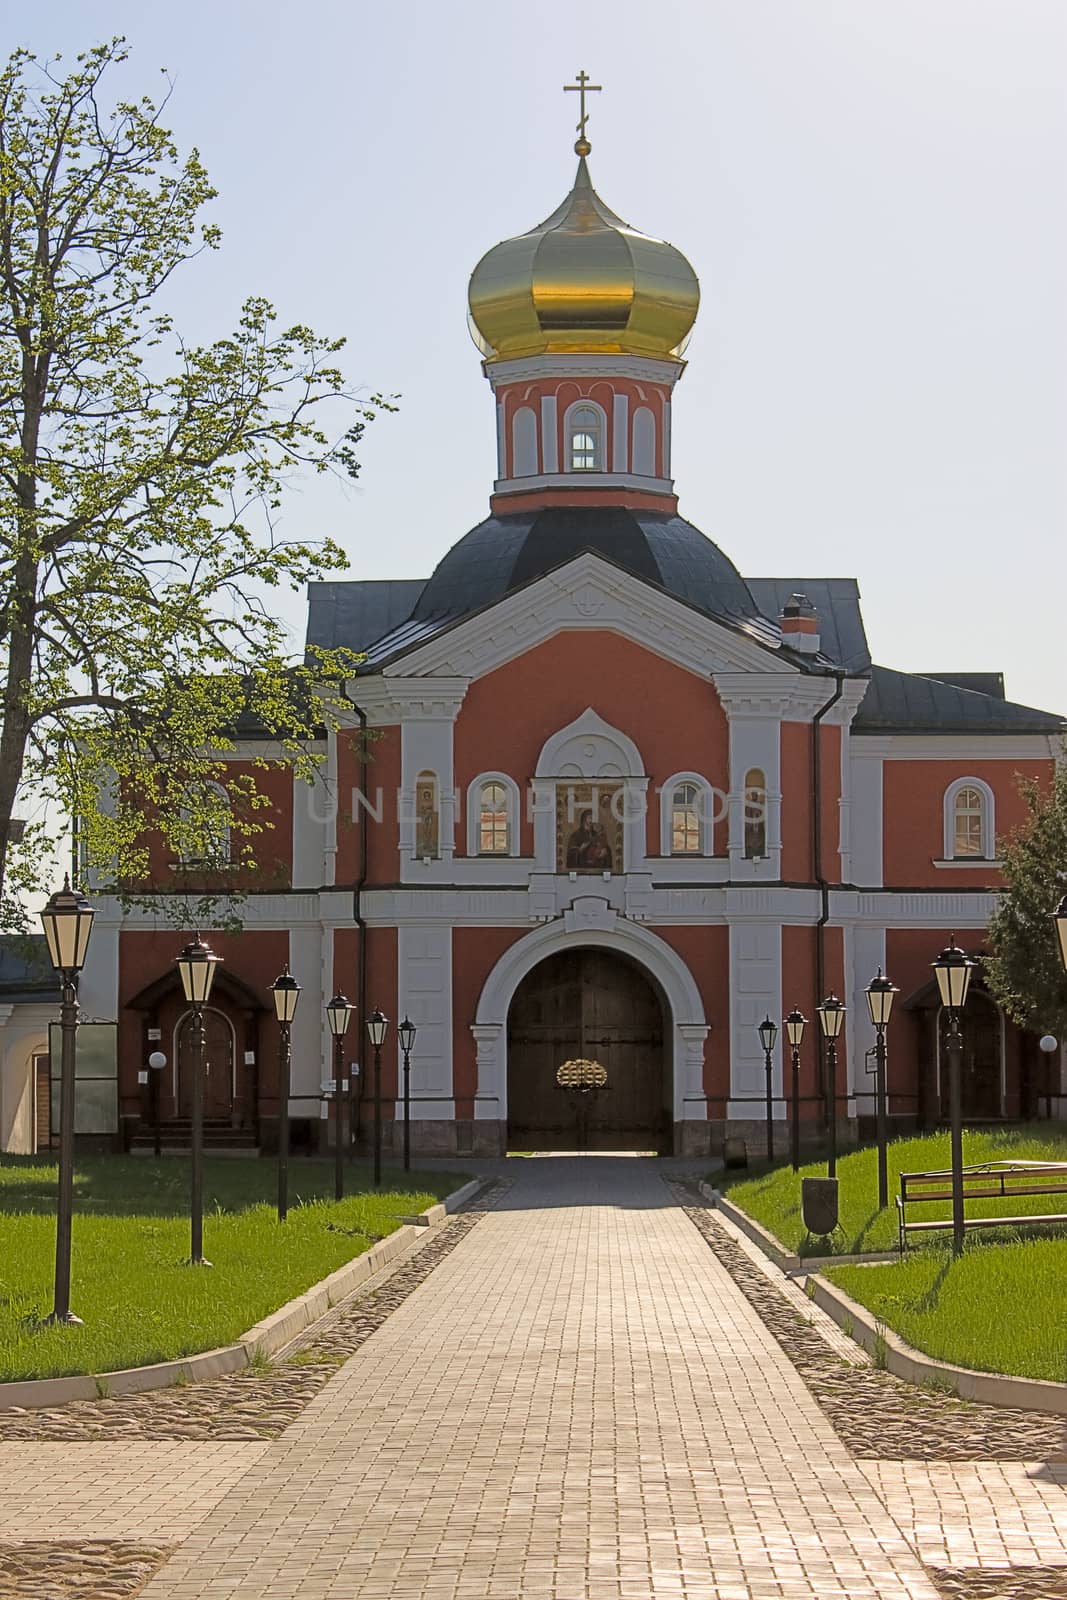  Church by zhannaprokopeva